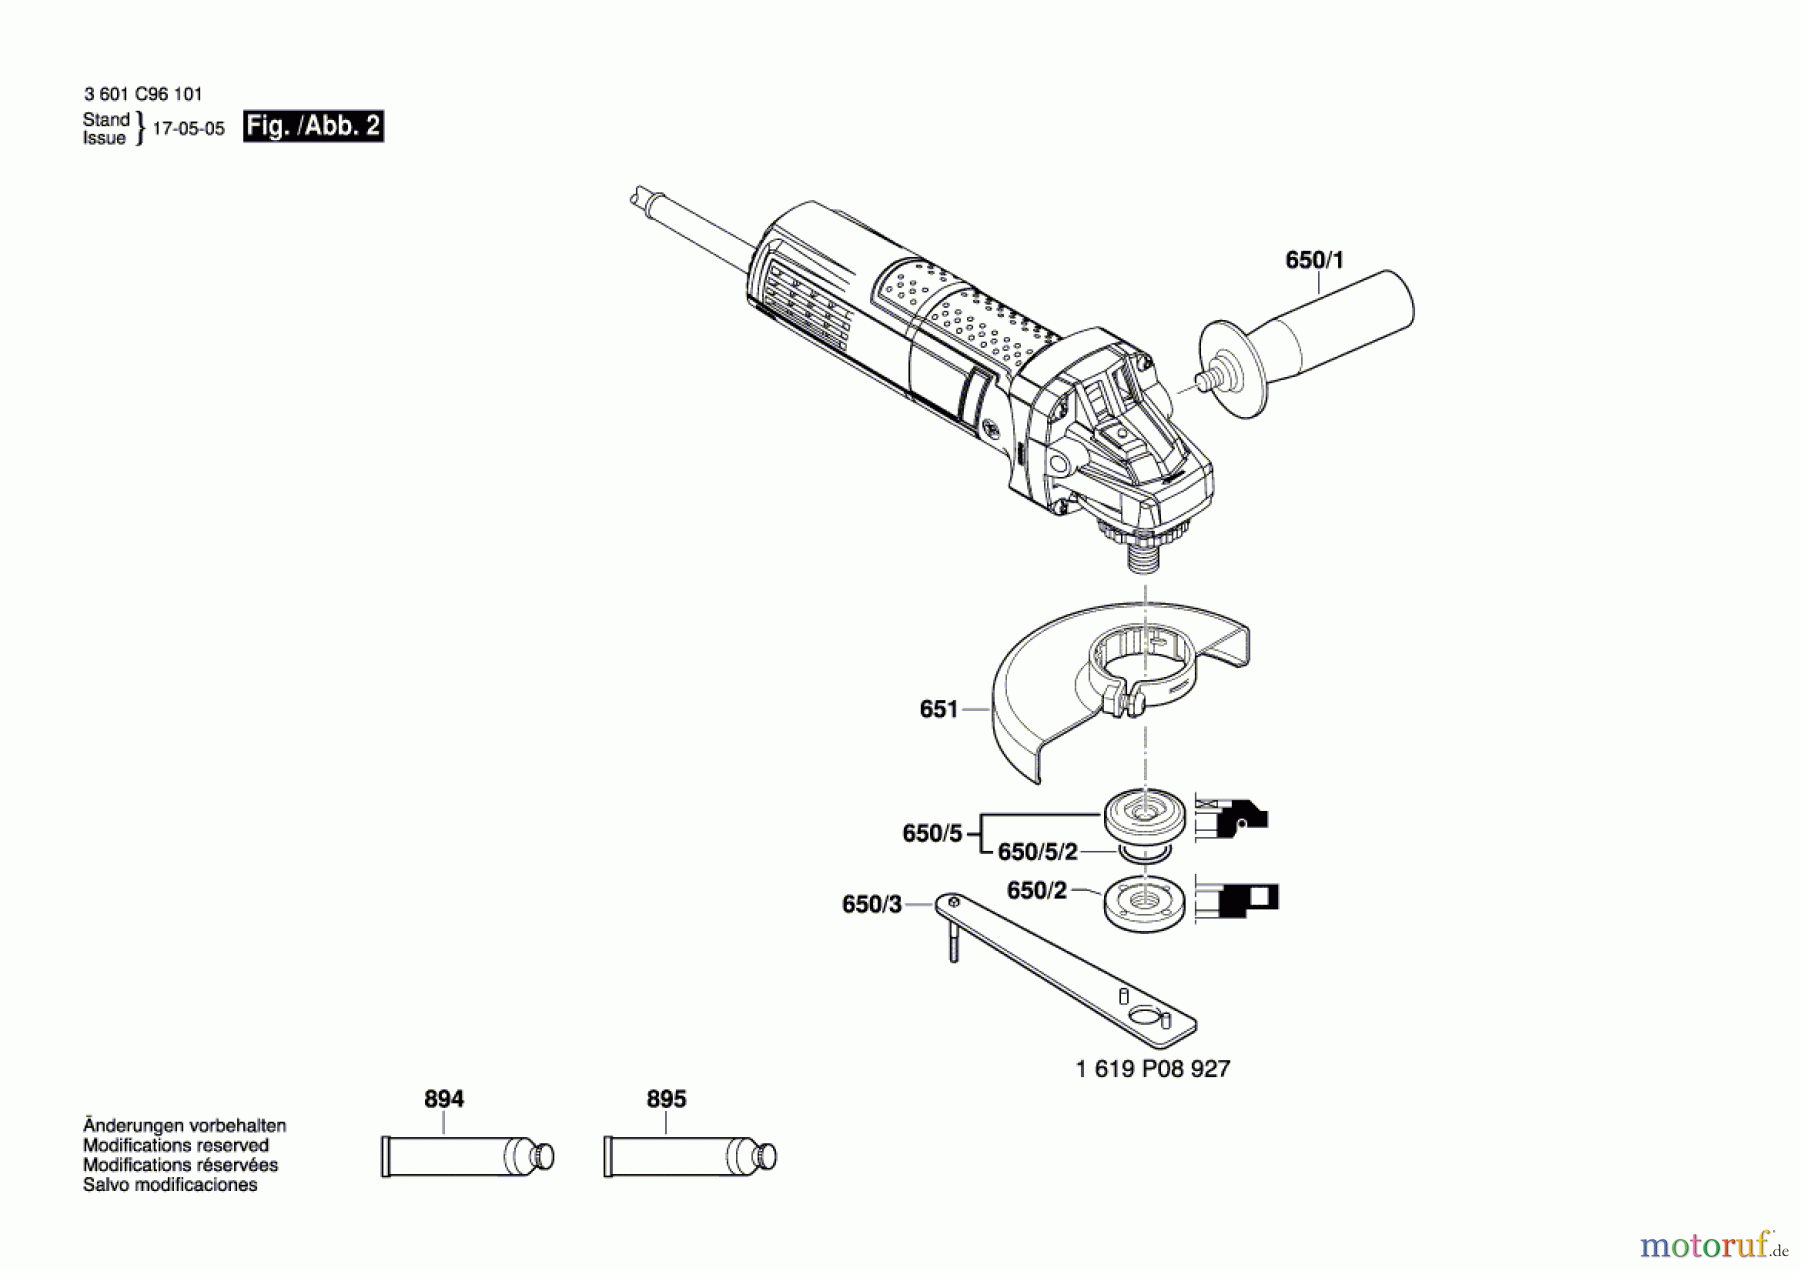  Bosch Werkzeug Winkelschleifer GWS 9-125 S Seite 2